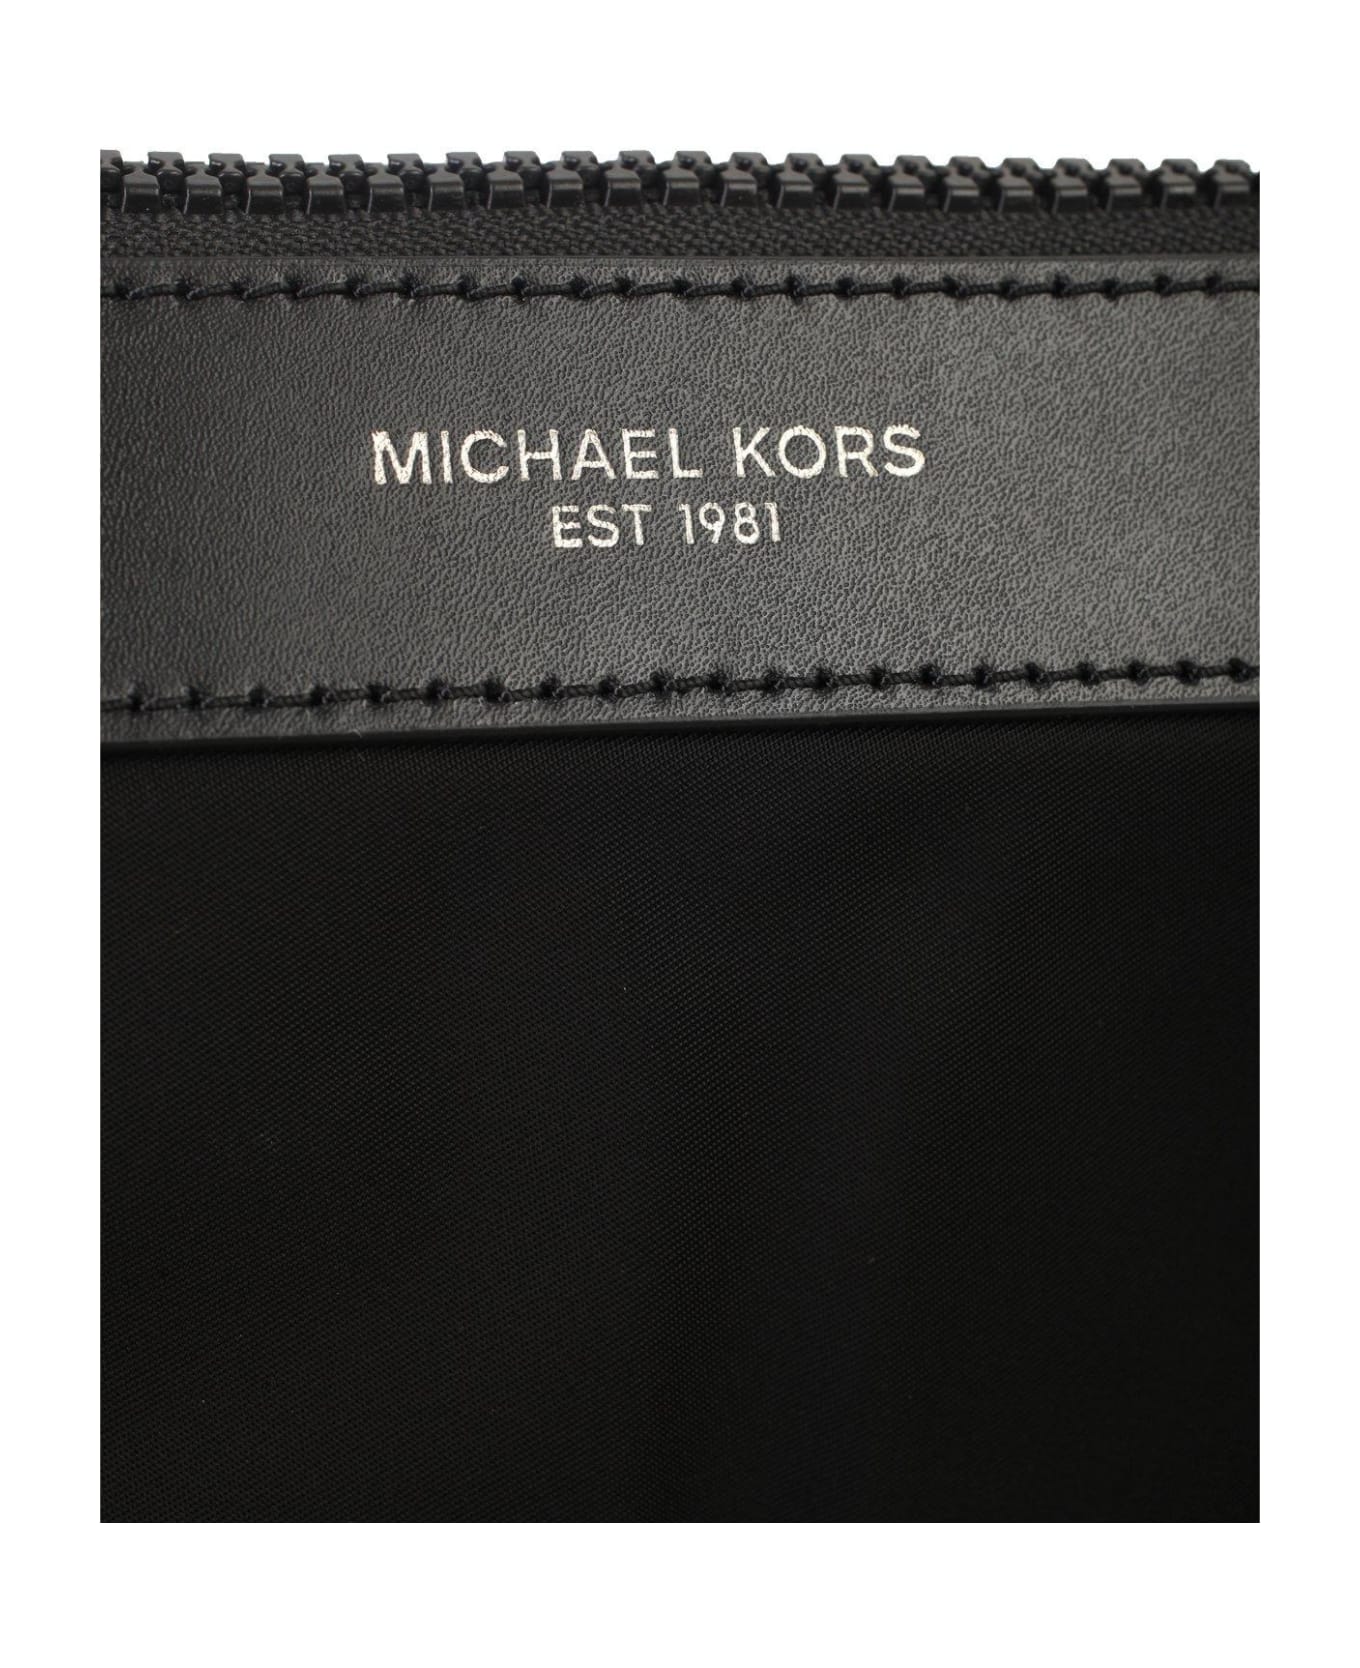 MICHAEL Michael Kors Brooklyn Large Shoulder Bag - Black ショルダーバッグ